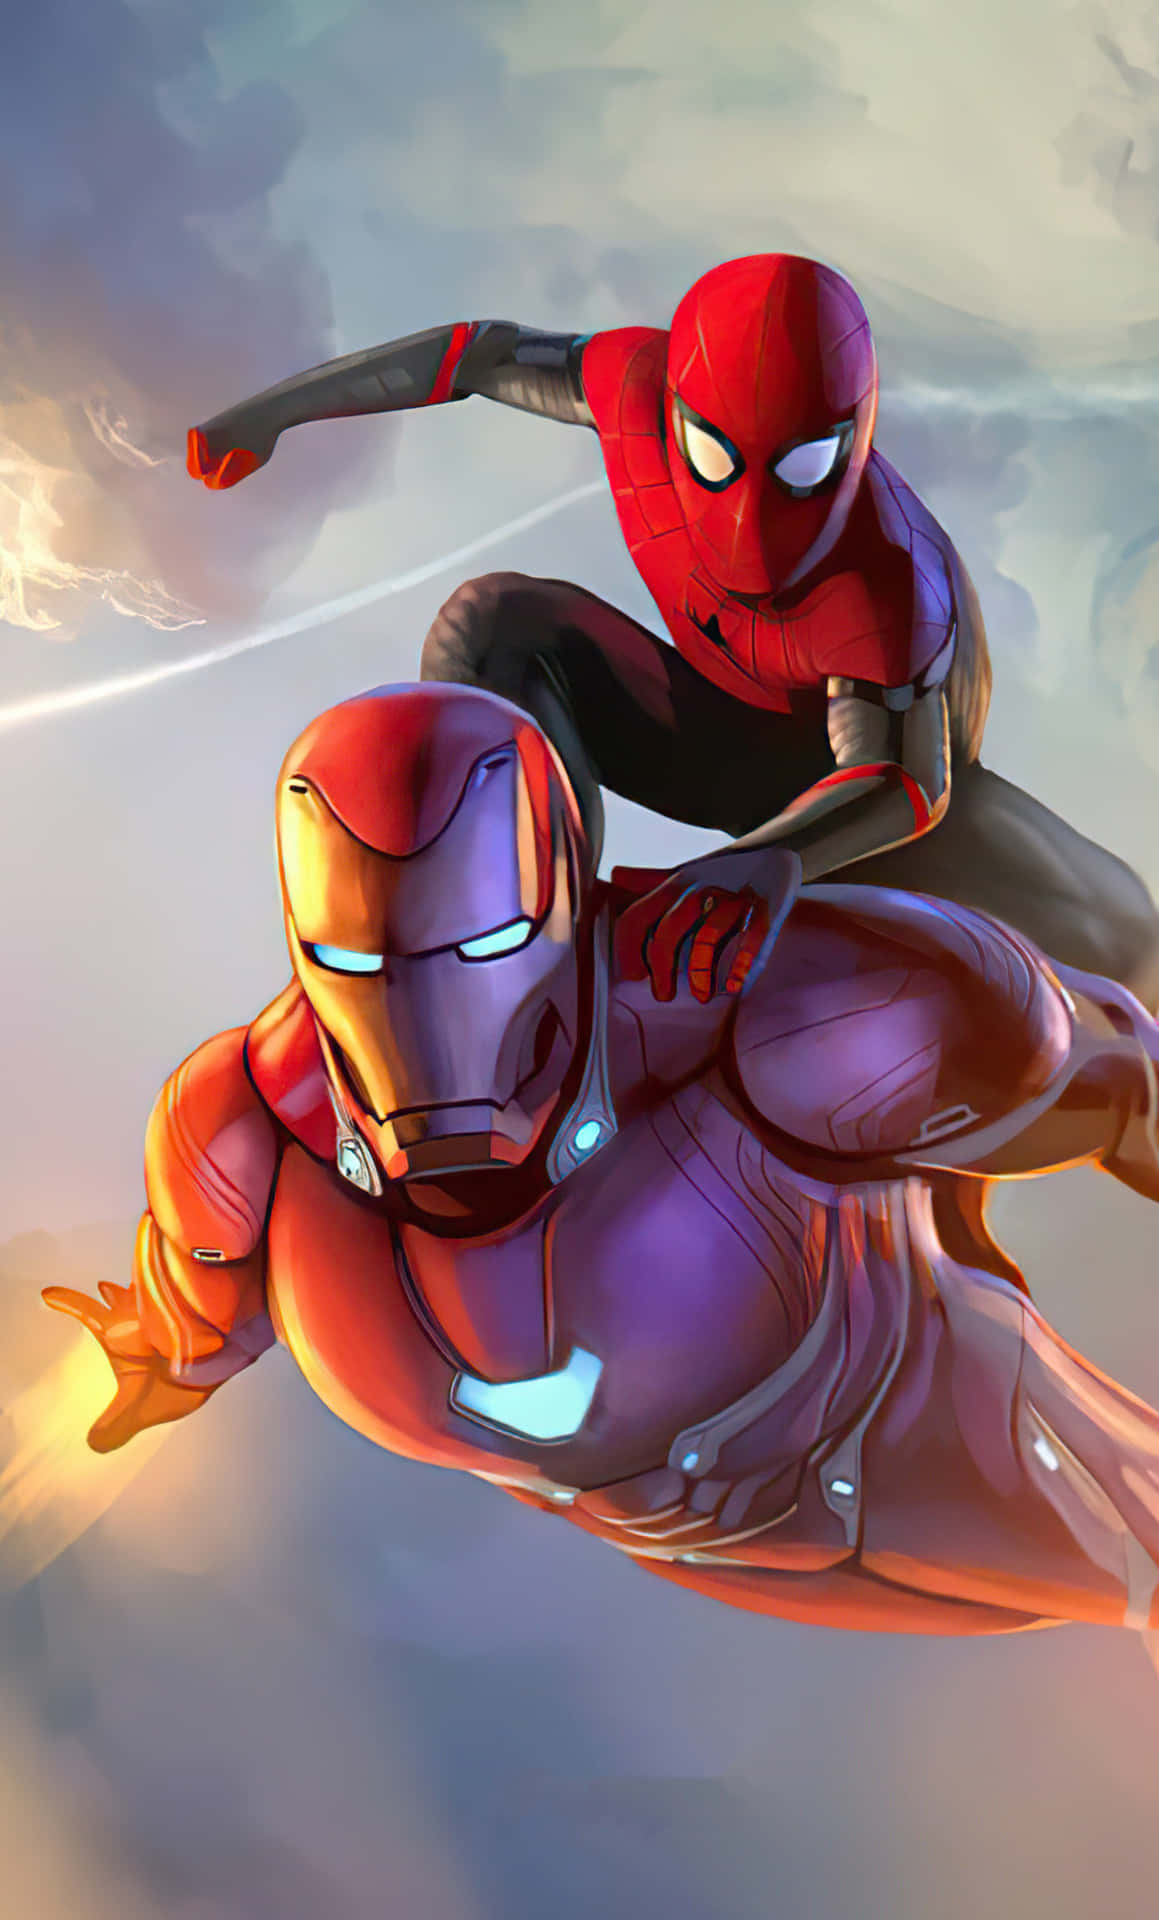 Spider Man og Iron Man samarbejder for at bringe retfærdighed på gaderne. Wallpaper